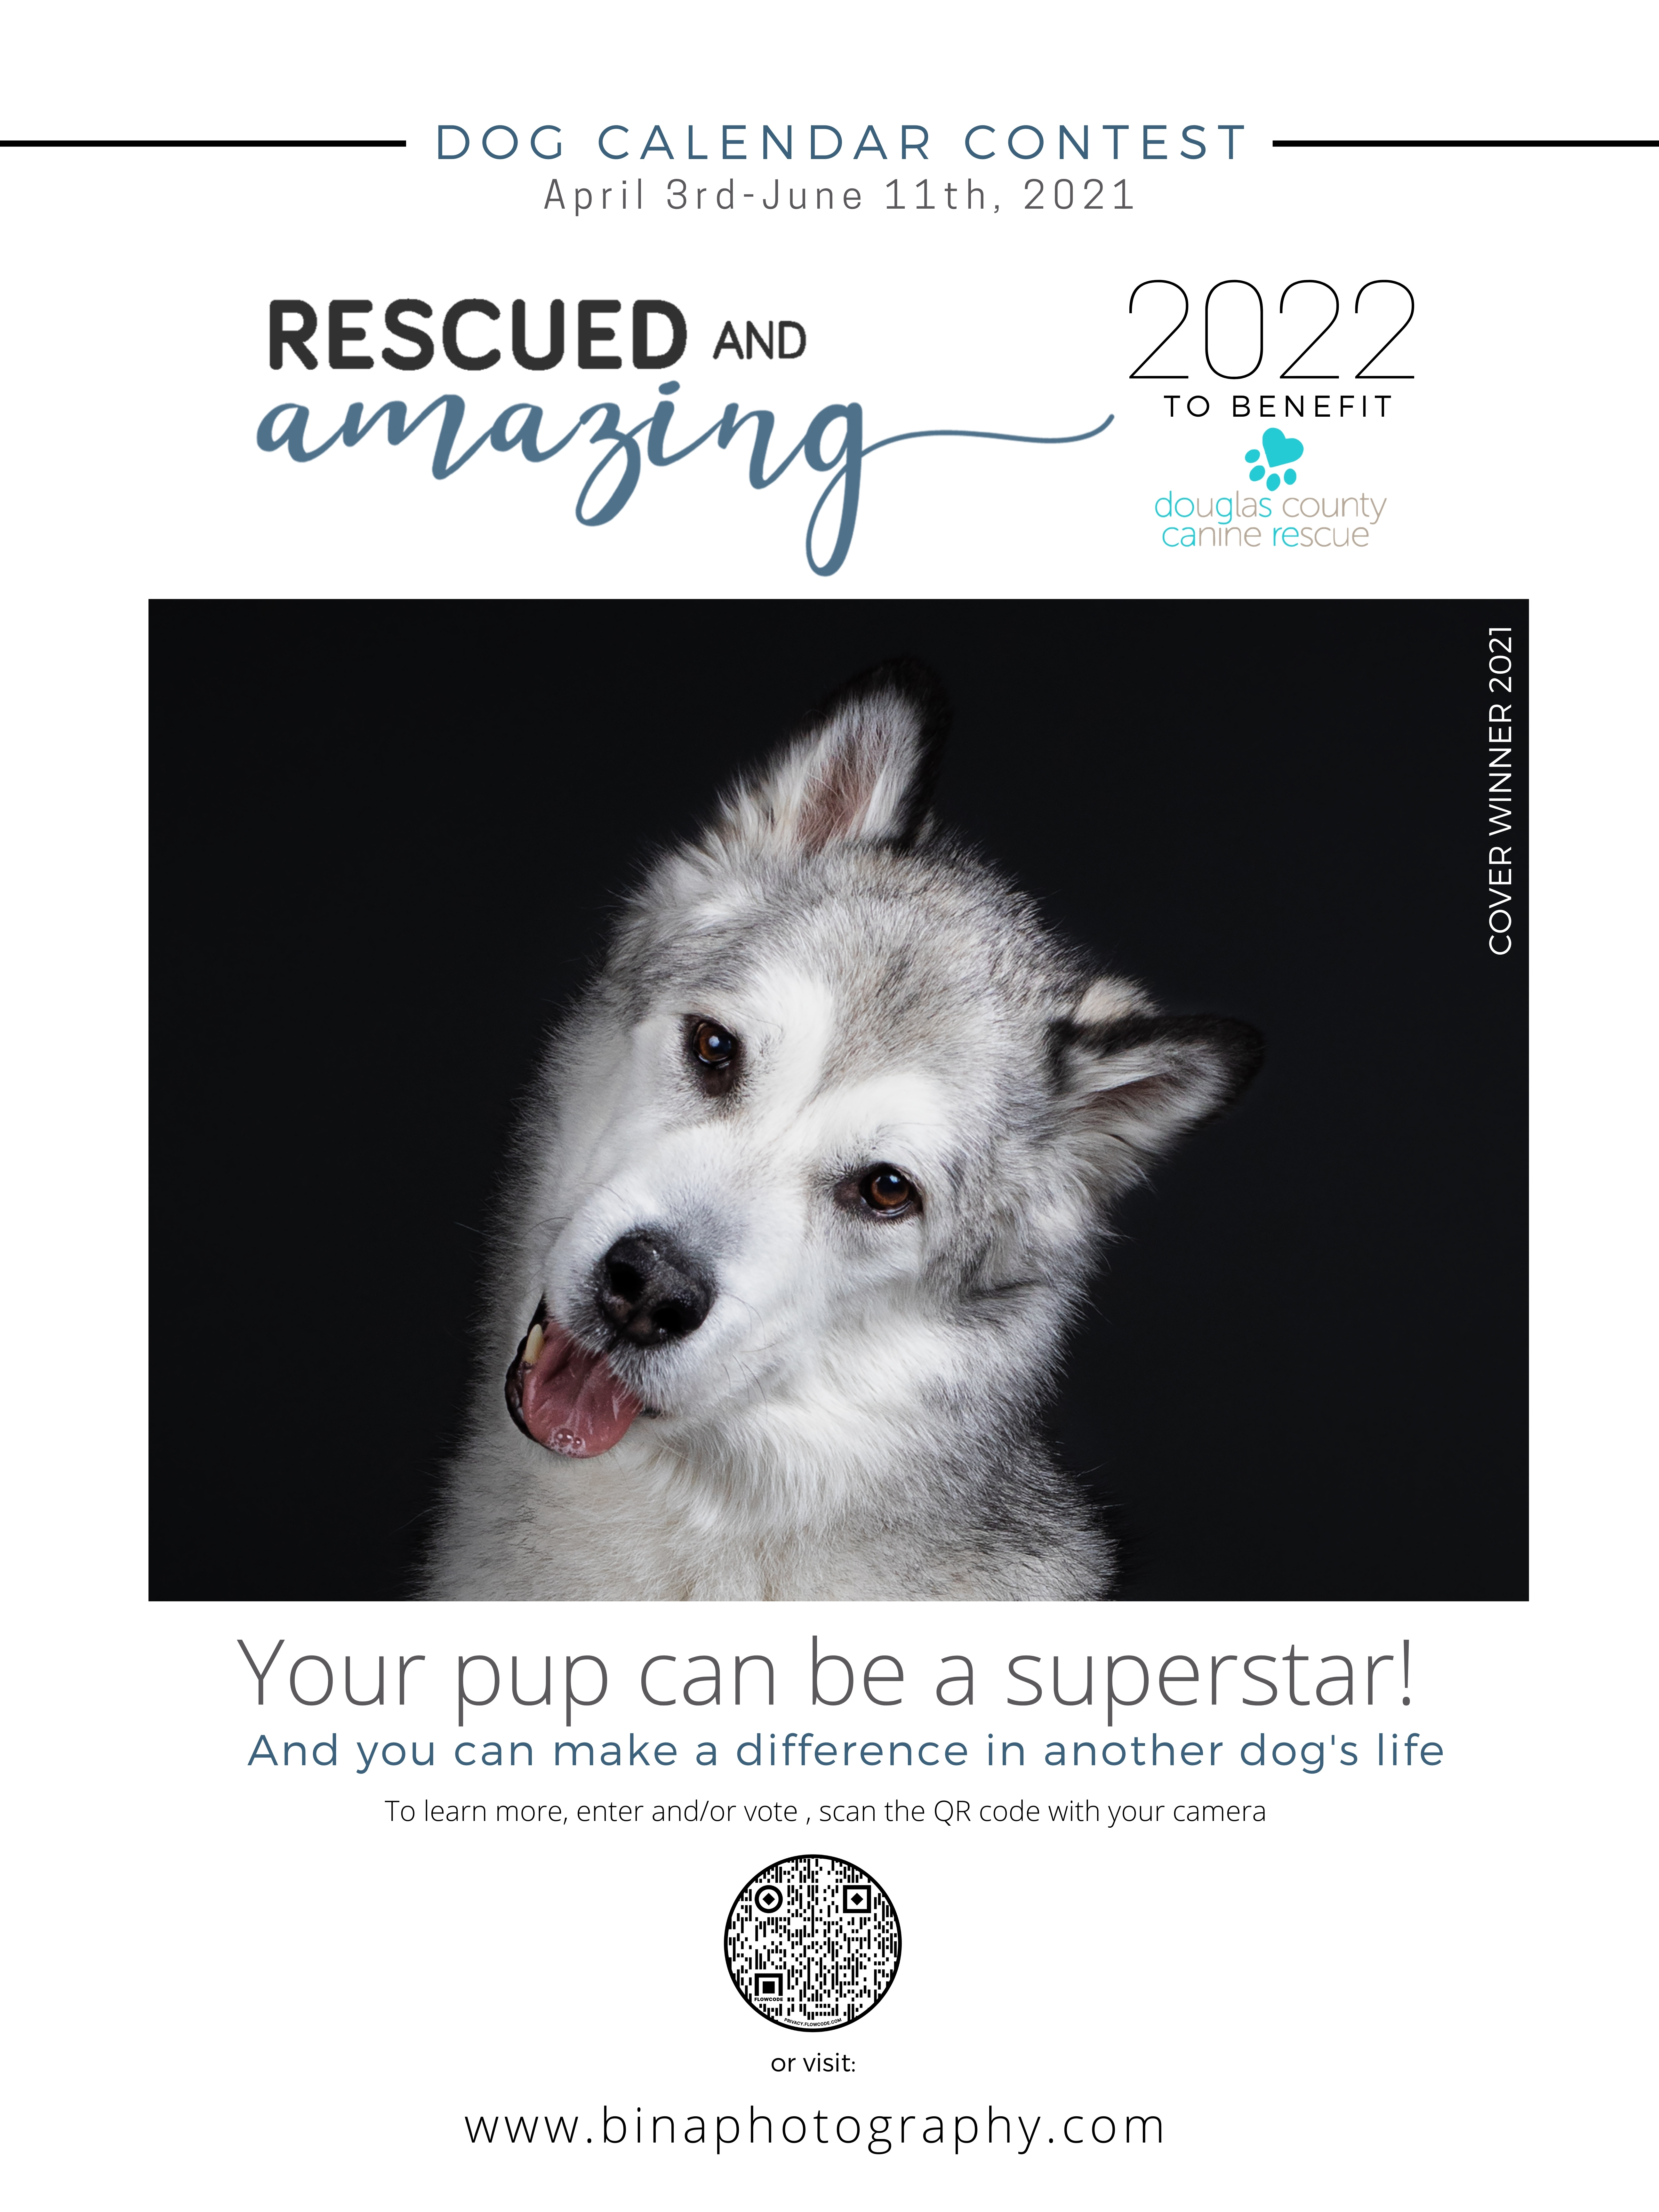 Dog Calendar Contest to Benefit Douglas County Canine Resuce